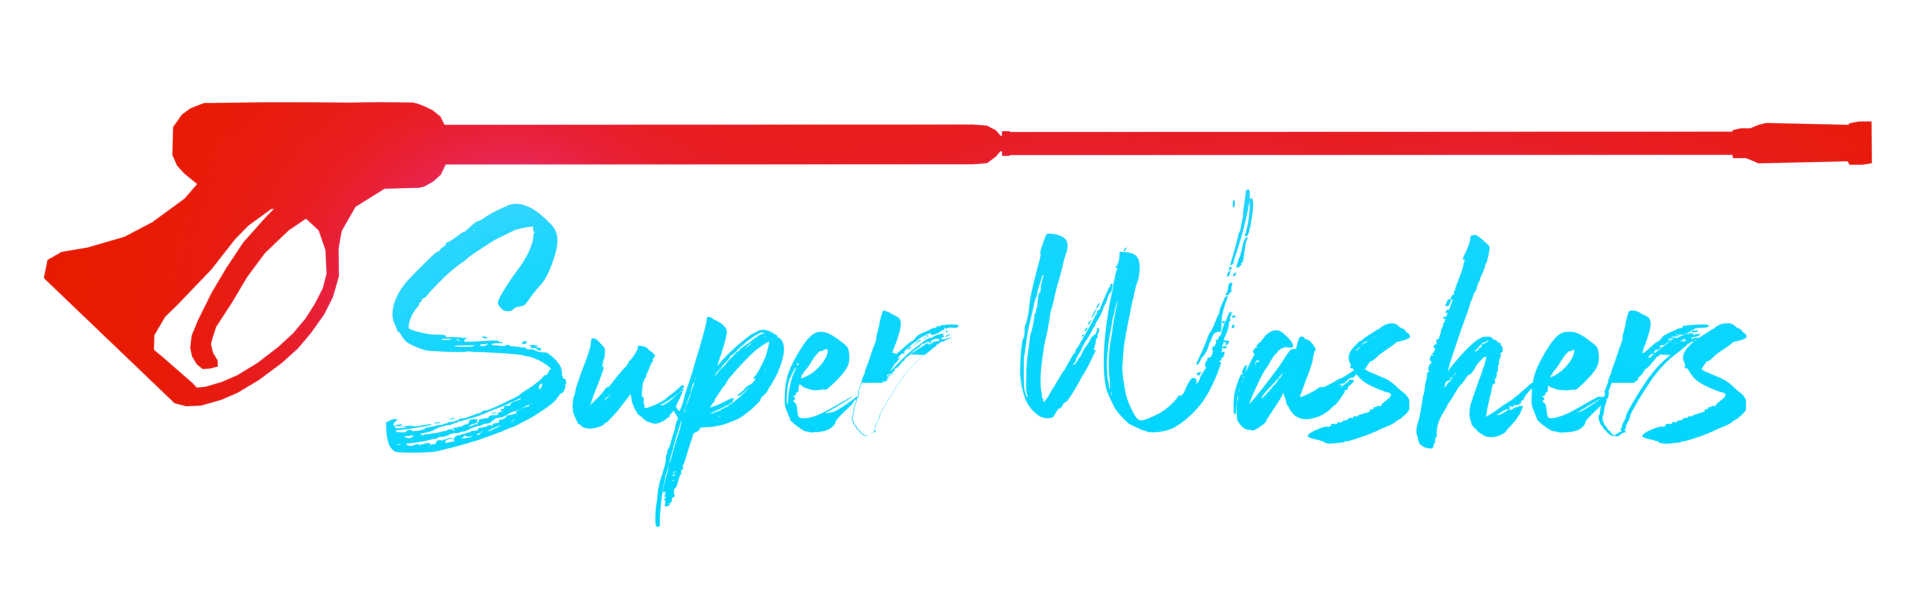 Super Washers logo